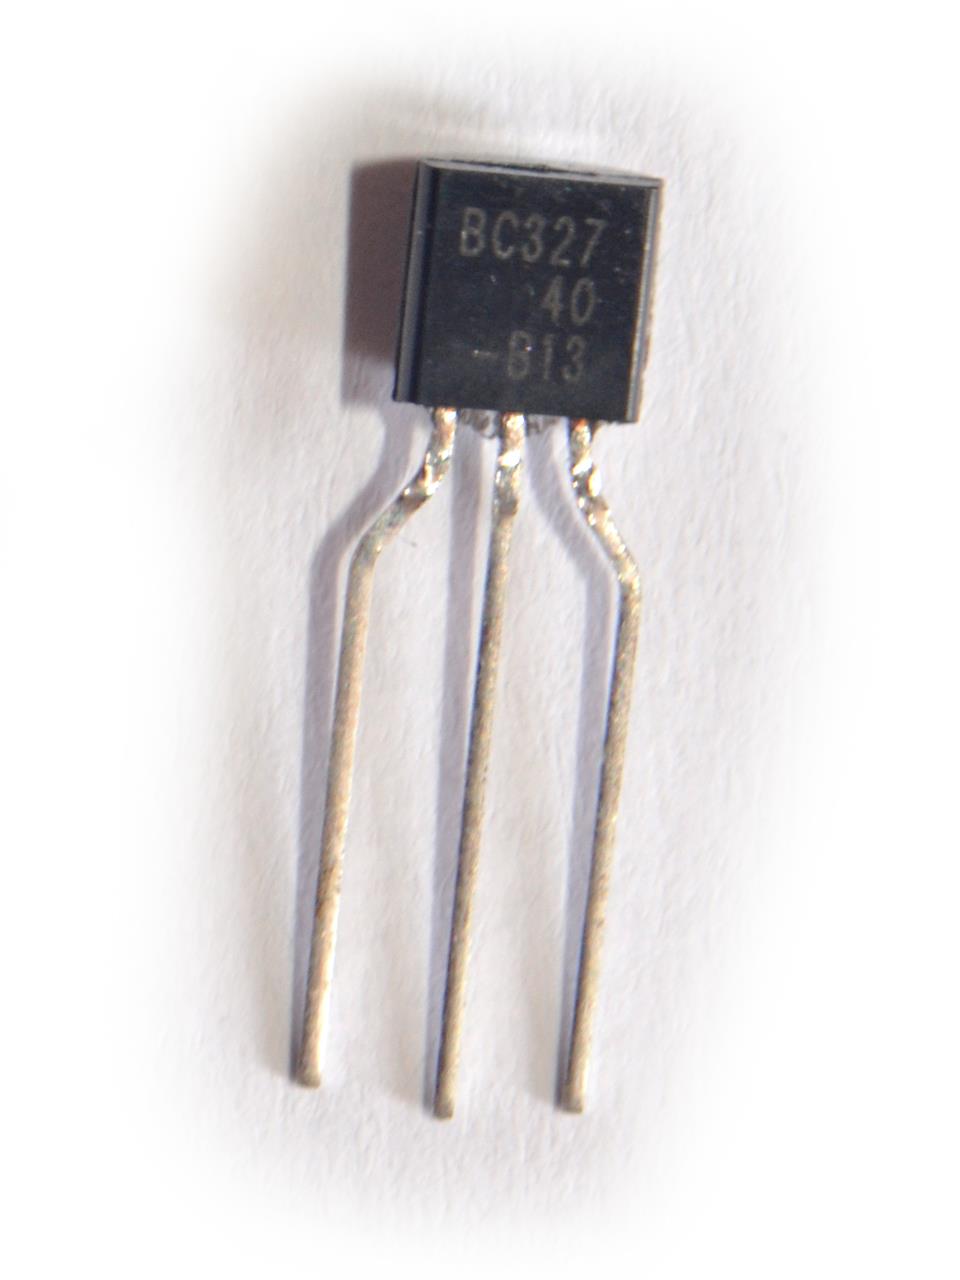 Transistores de Uso Geral - Transistor BC327